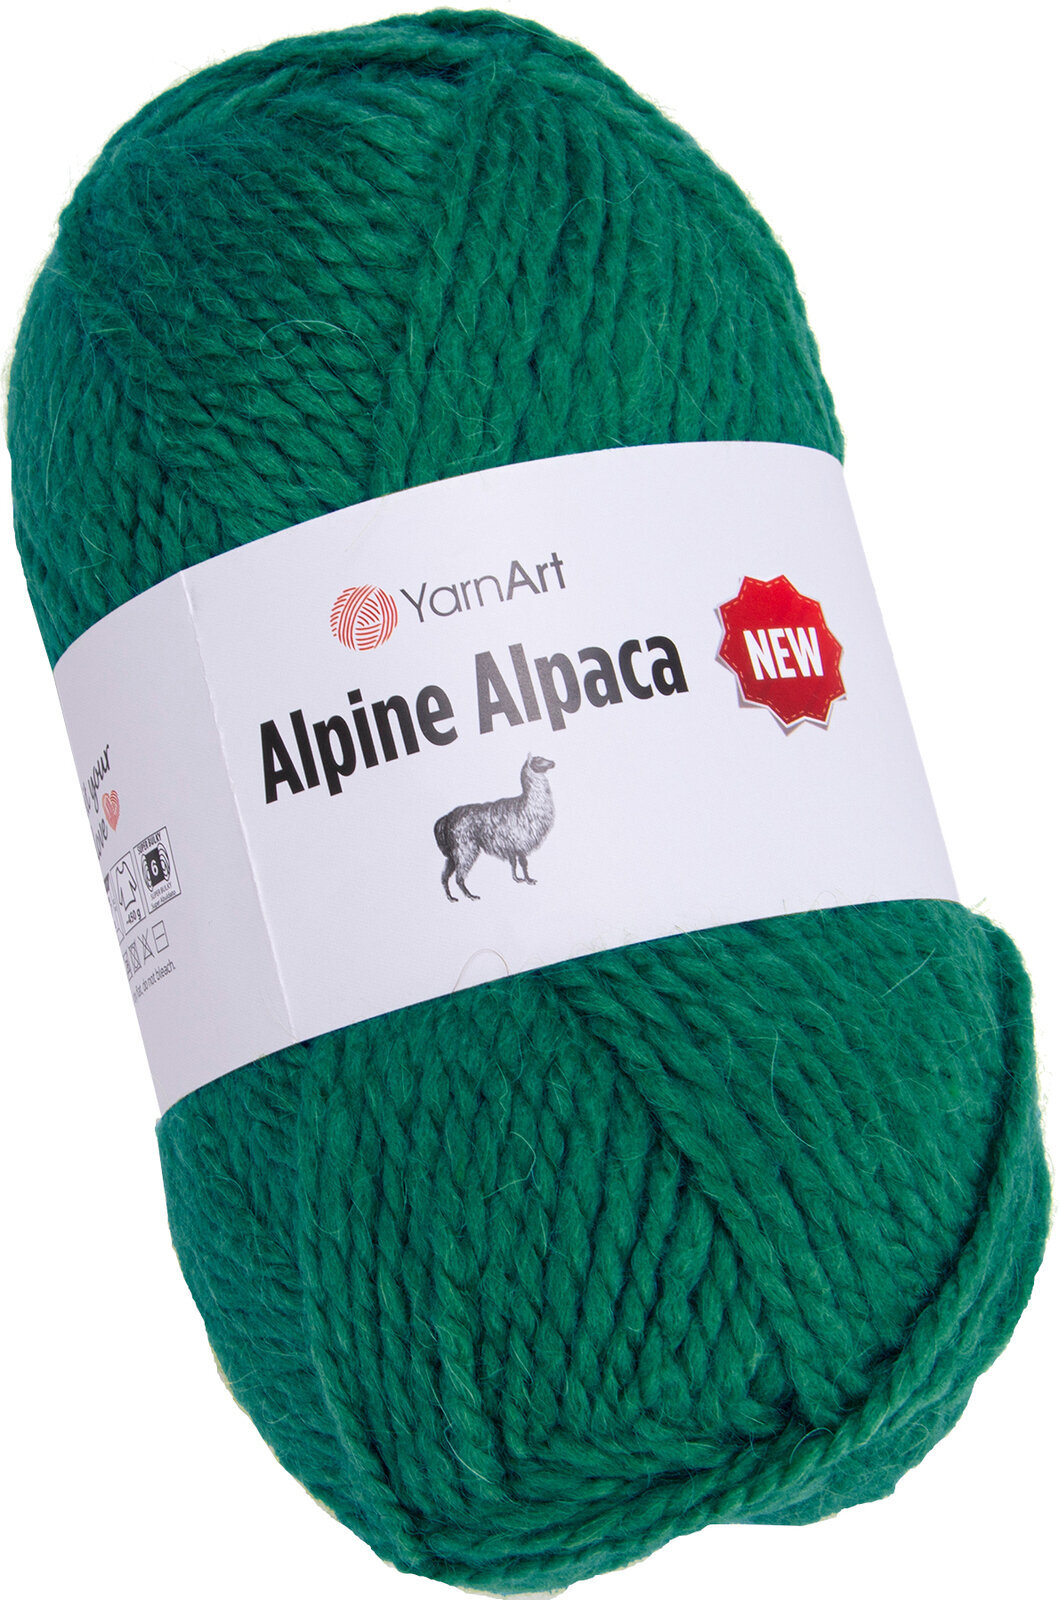 Fil à tricoter Yarn Art Alpine Alpaca New 1449 Fil à tricoter